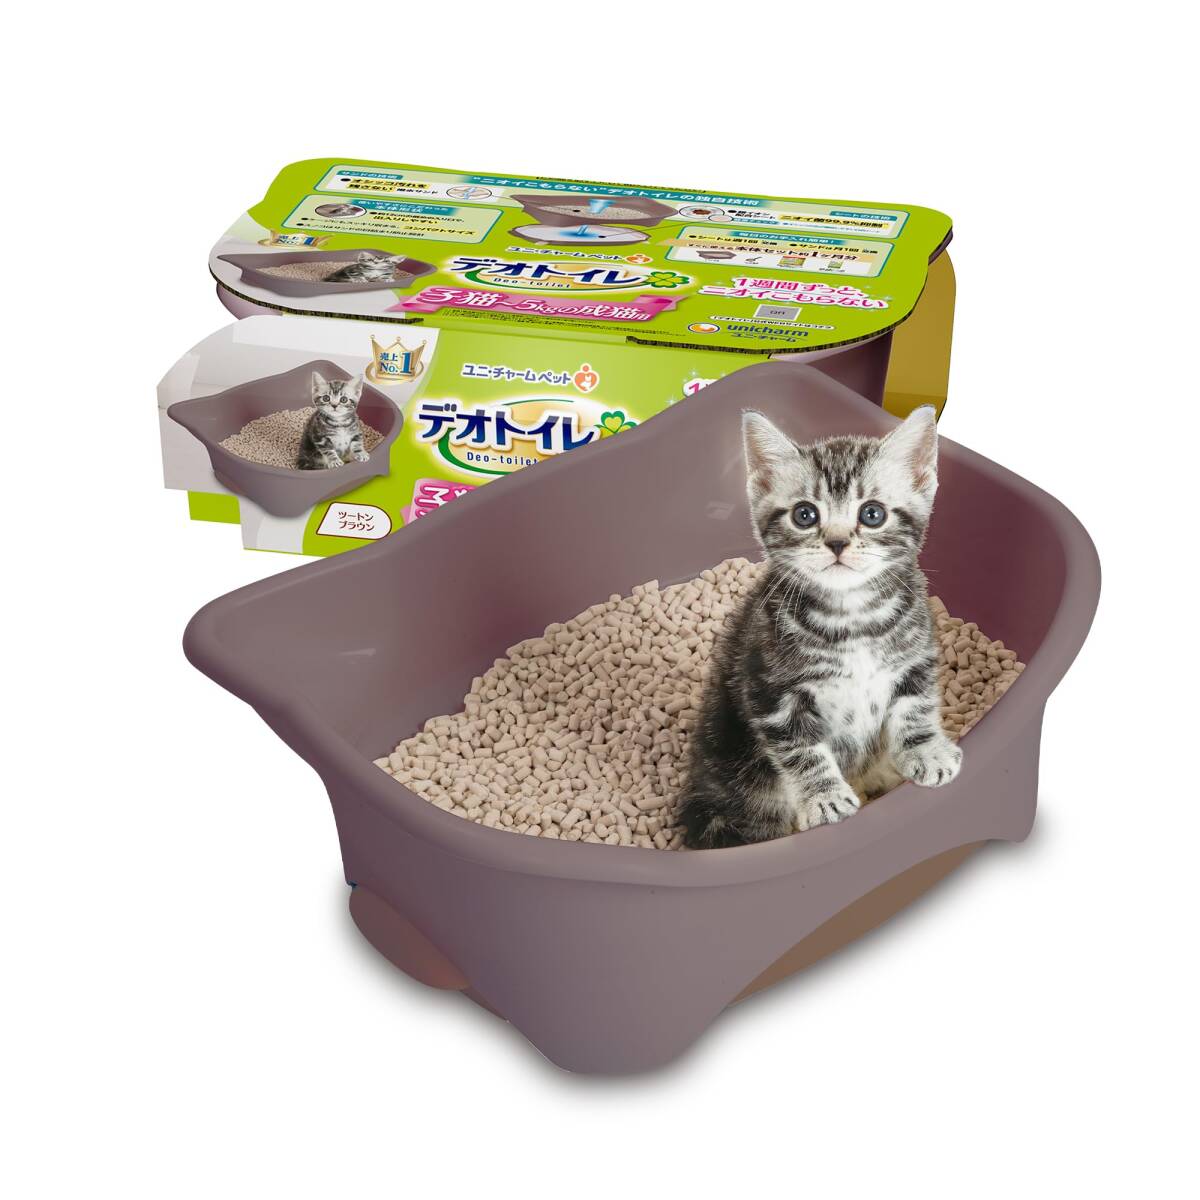 teo туалет корпус комплект [ примерно 1. месяц минут кошка песок * сиденье есть ] кошка для туалет корпус . кошка ~5kg. для взрослой кошки двухцветный Brown 